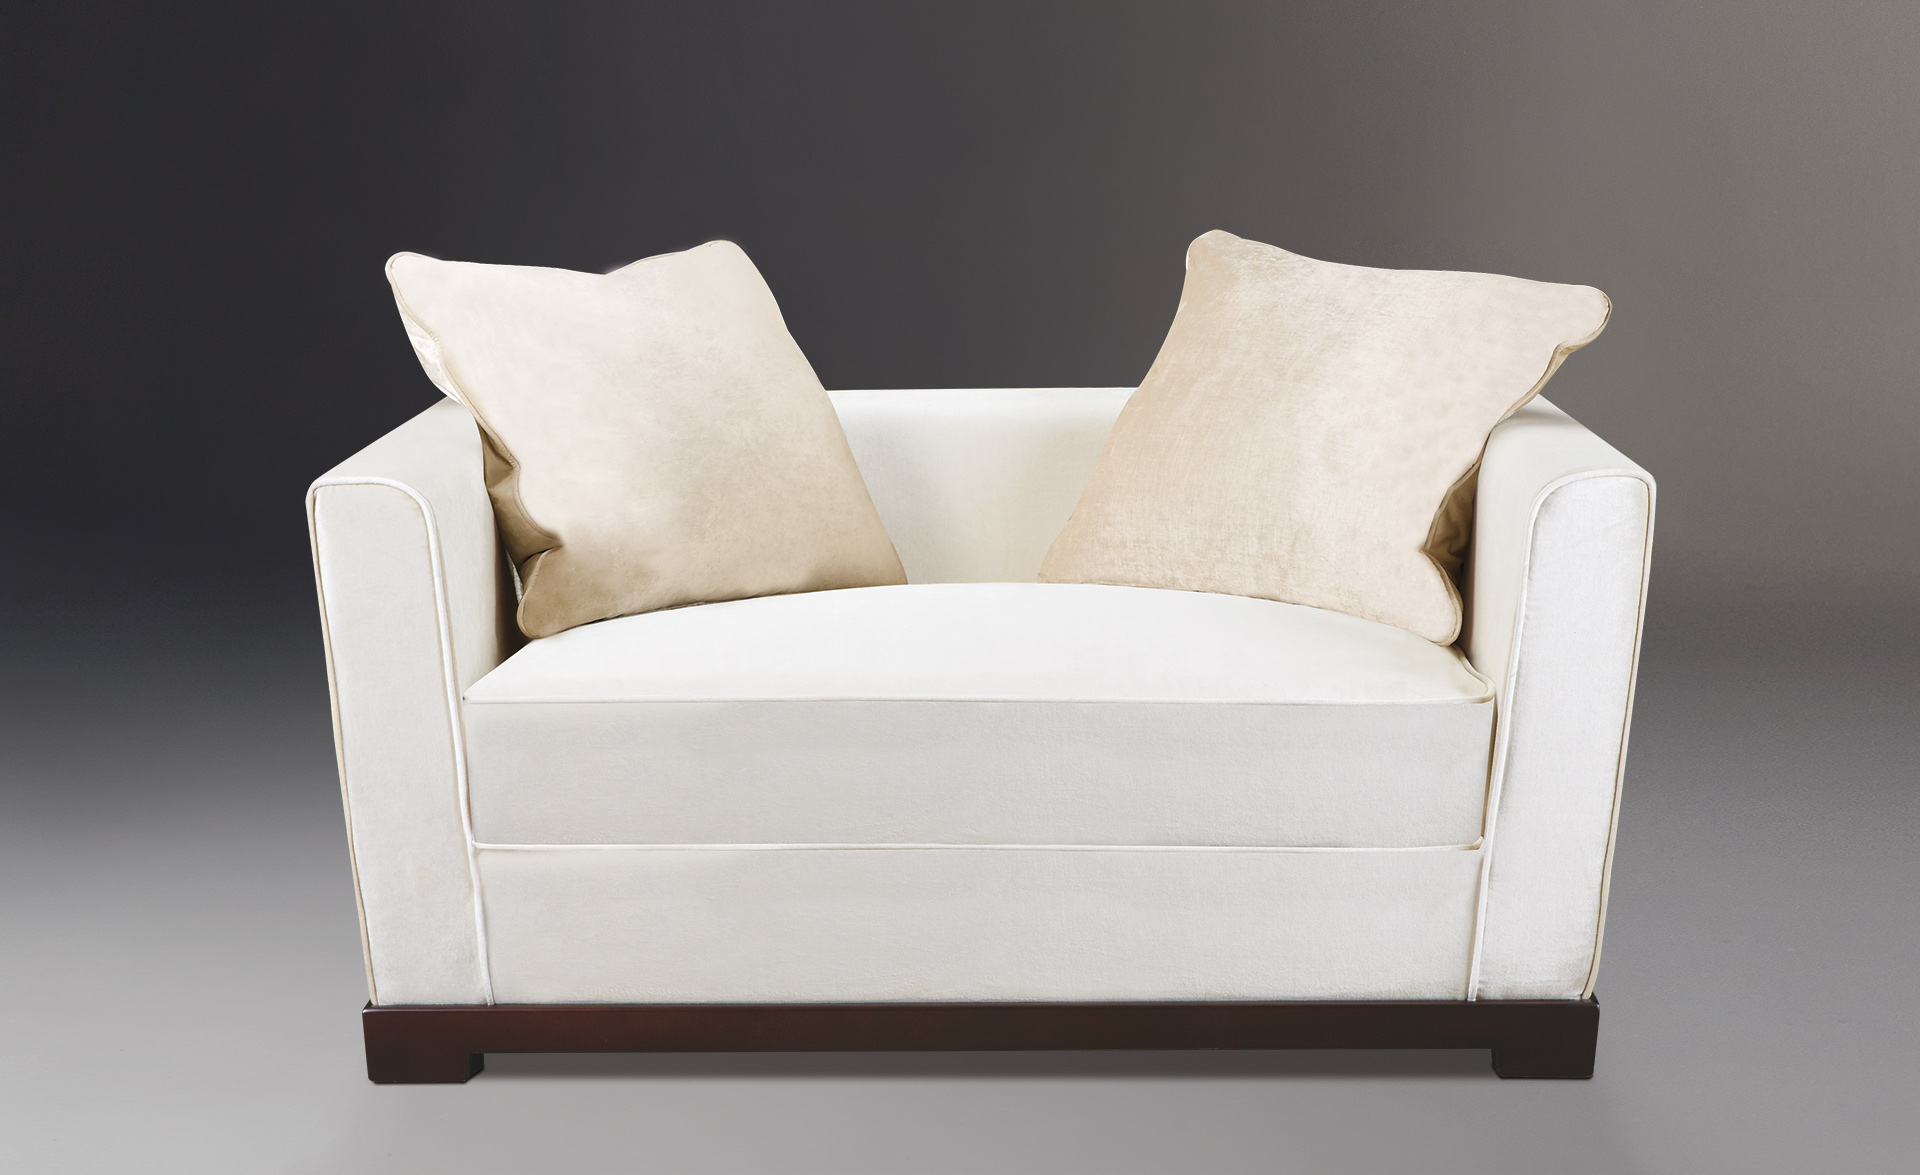 Wanda è un divano in legno rivestito in tessuto con una linea classica, del catalogo di Promemoria | Promemoria